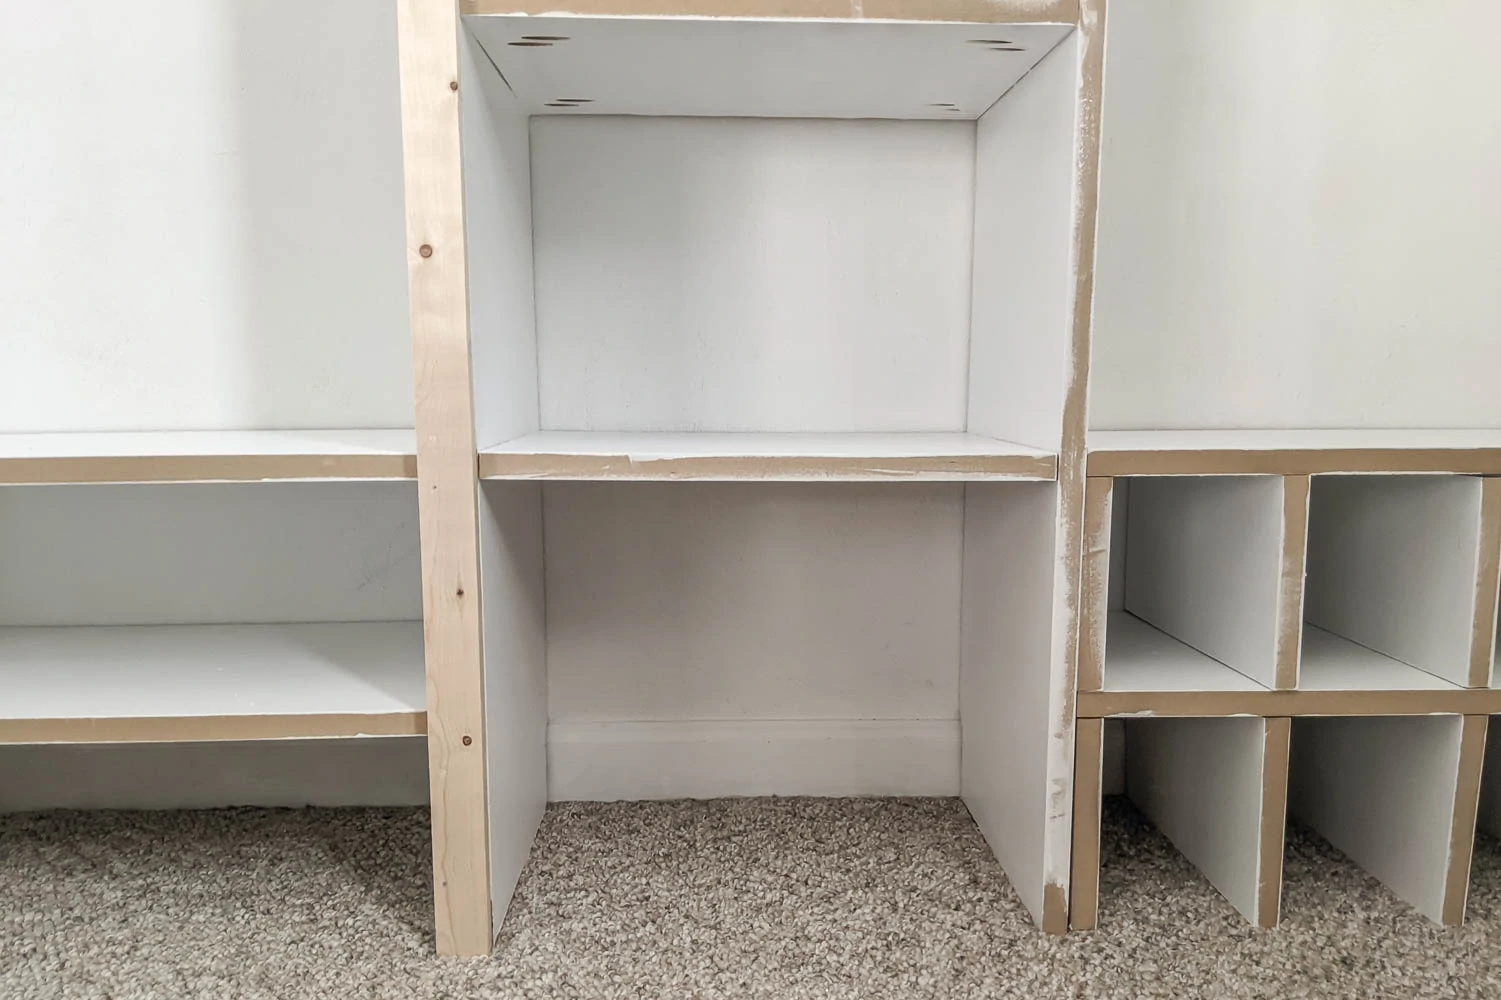 https://www.lovelyetc.com/wp-content/uploads/2021/03/adding-trim-to-closet-shelves.webp